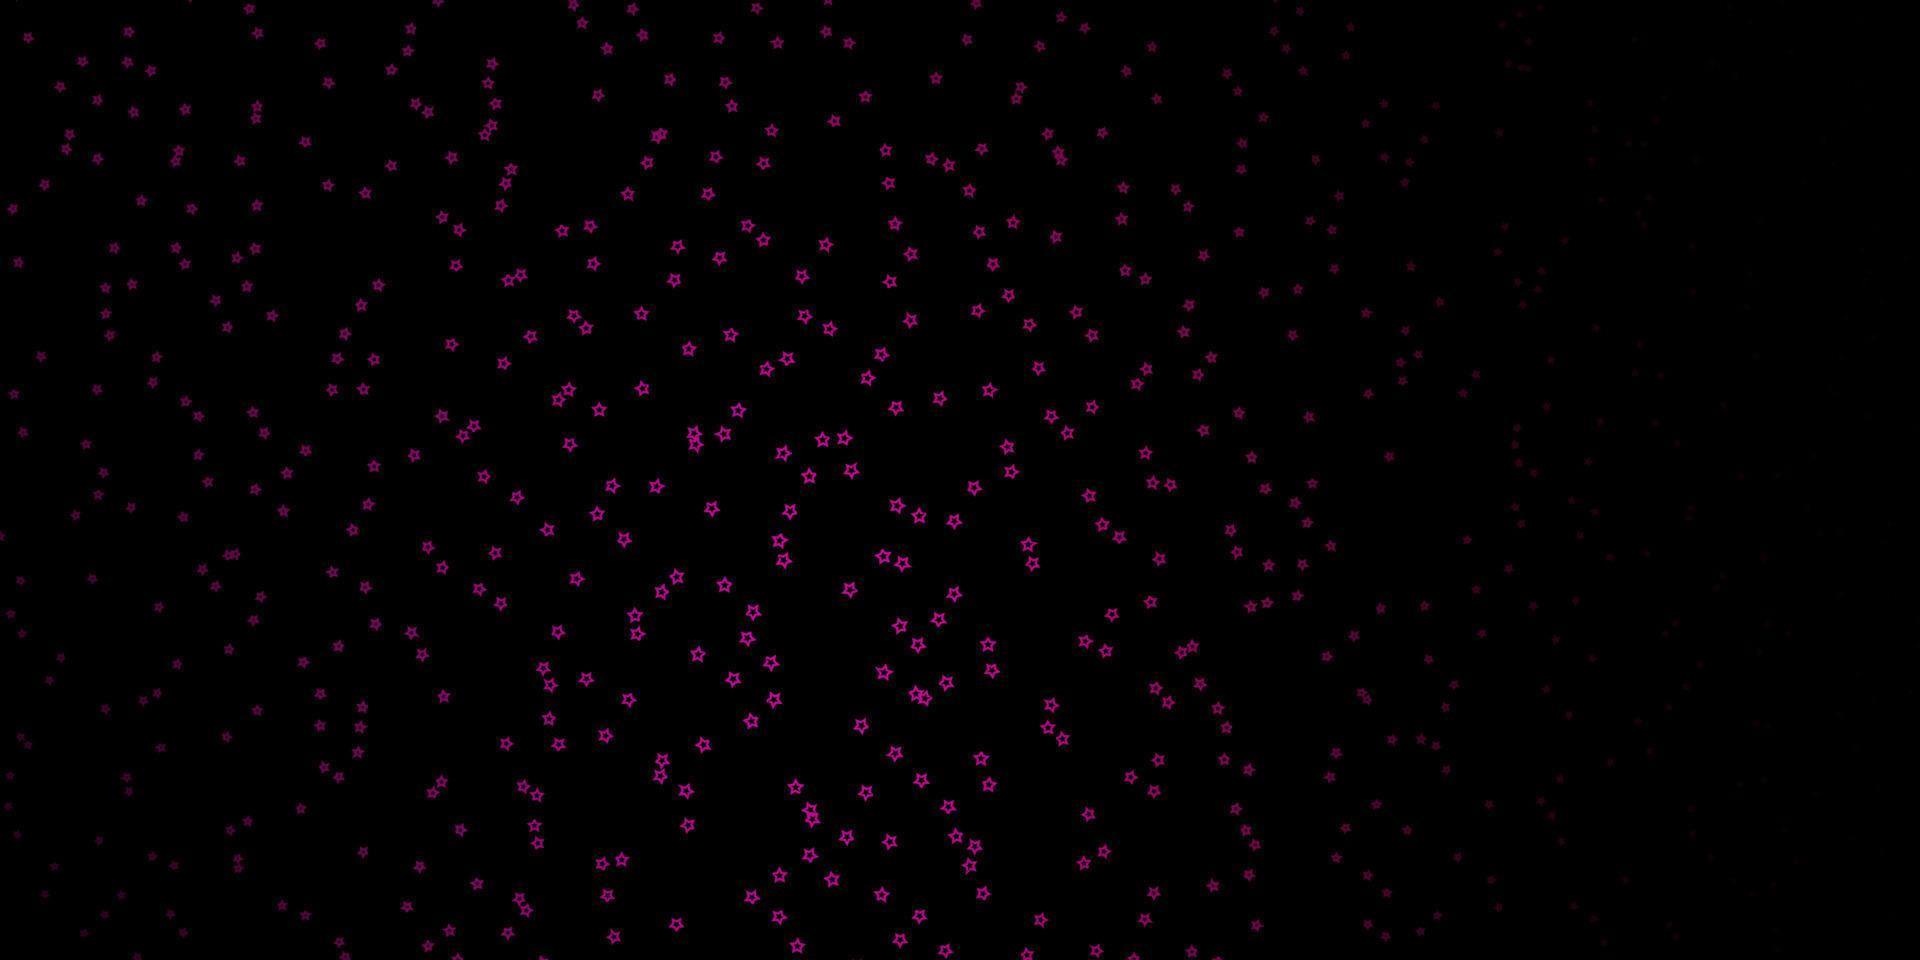 fond de vecteur rose foncé avec des étoiles colorées.